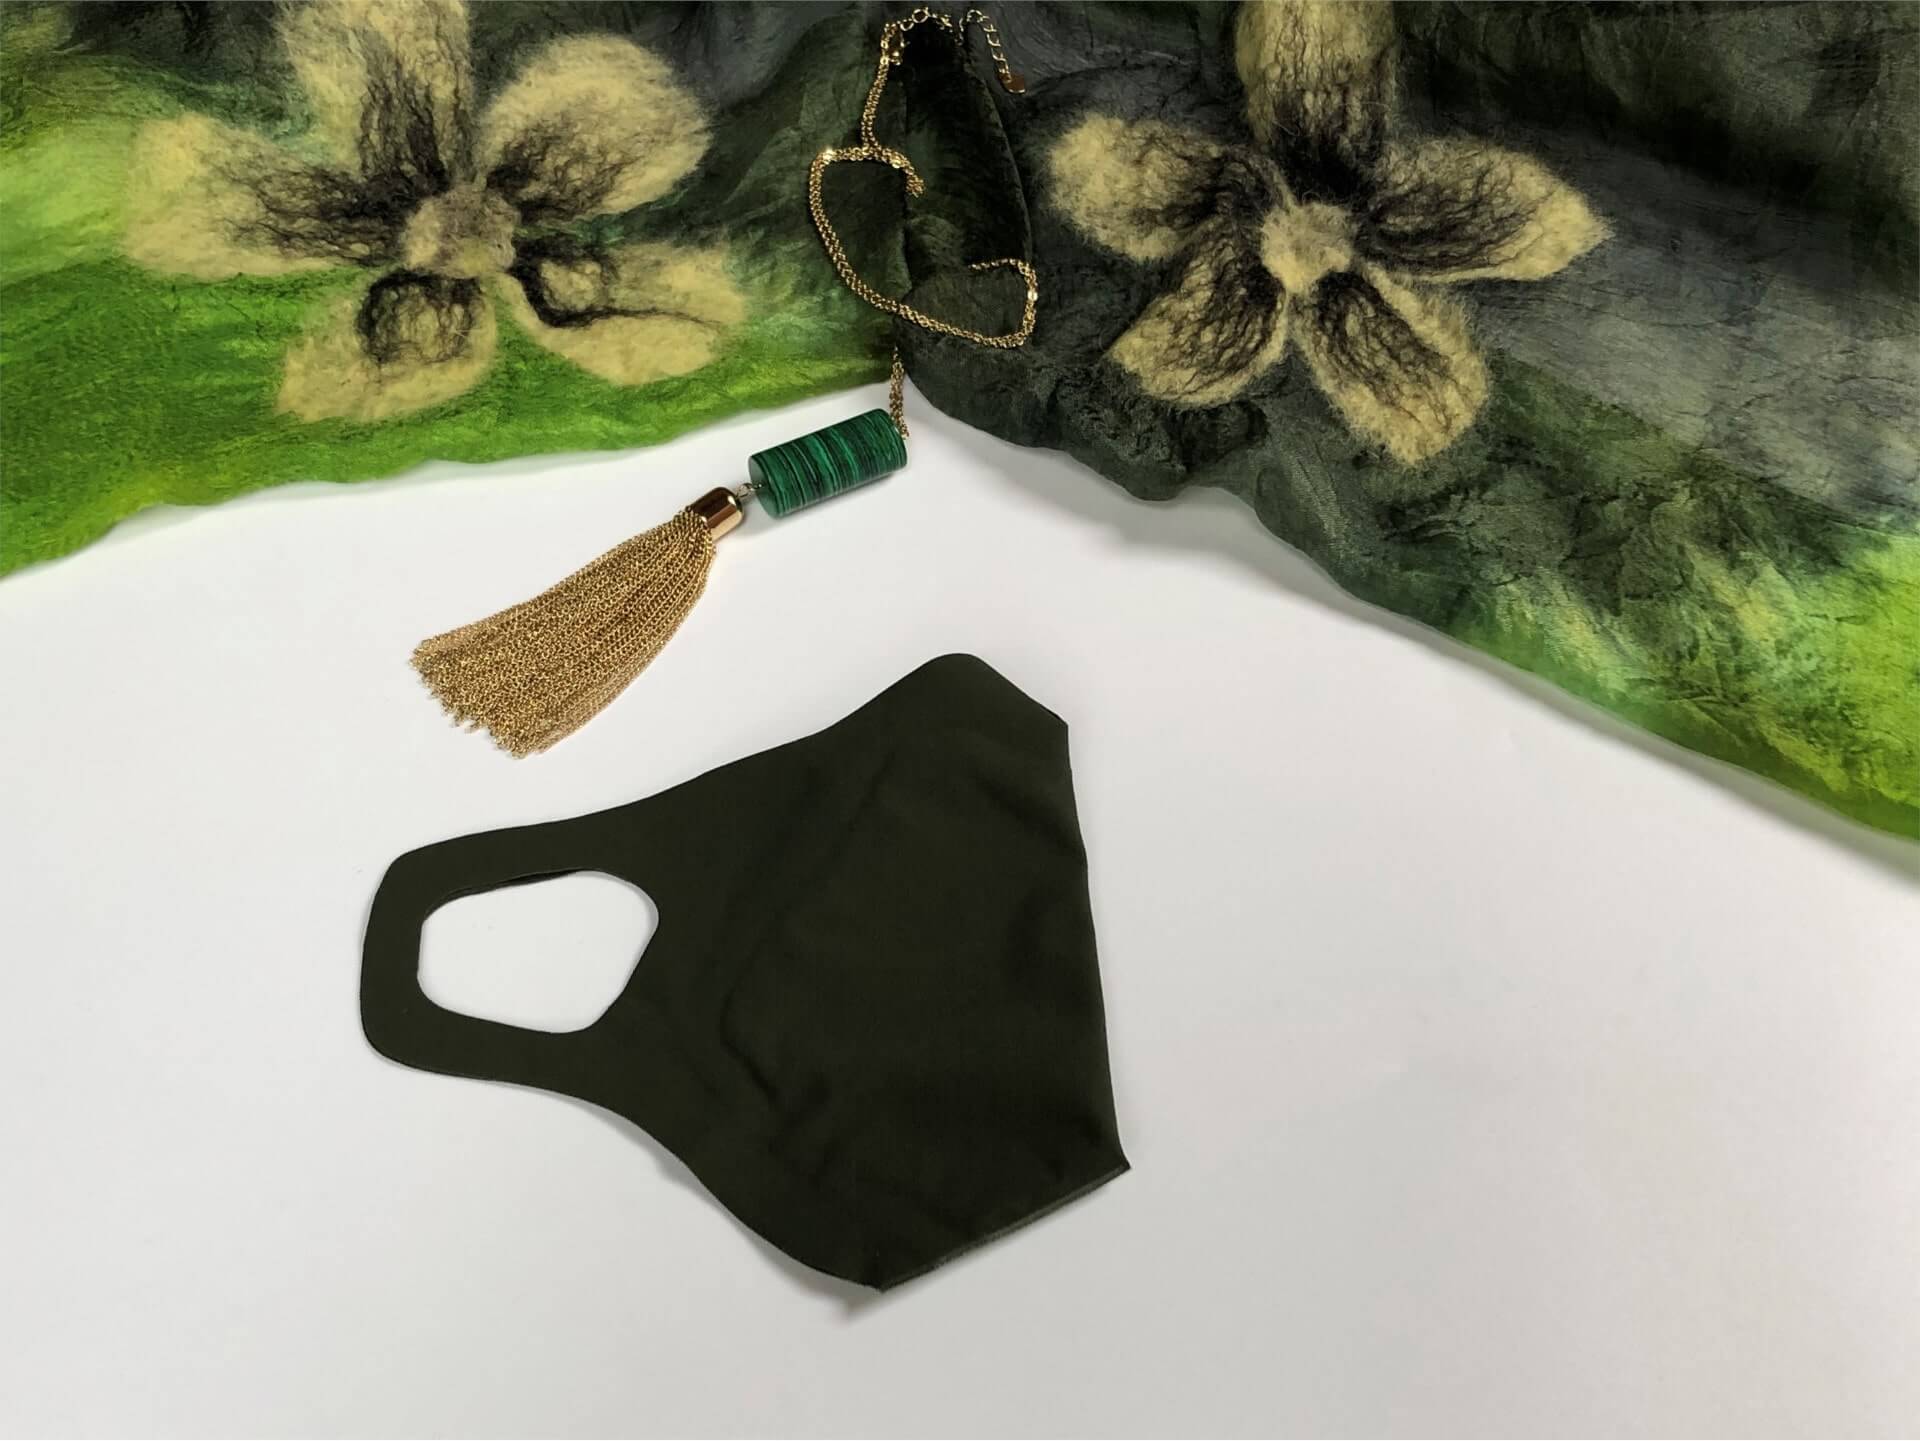 Dunkelgrüne Schutzmaske in Kombination mit dem grün-gelben Schal